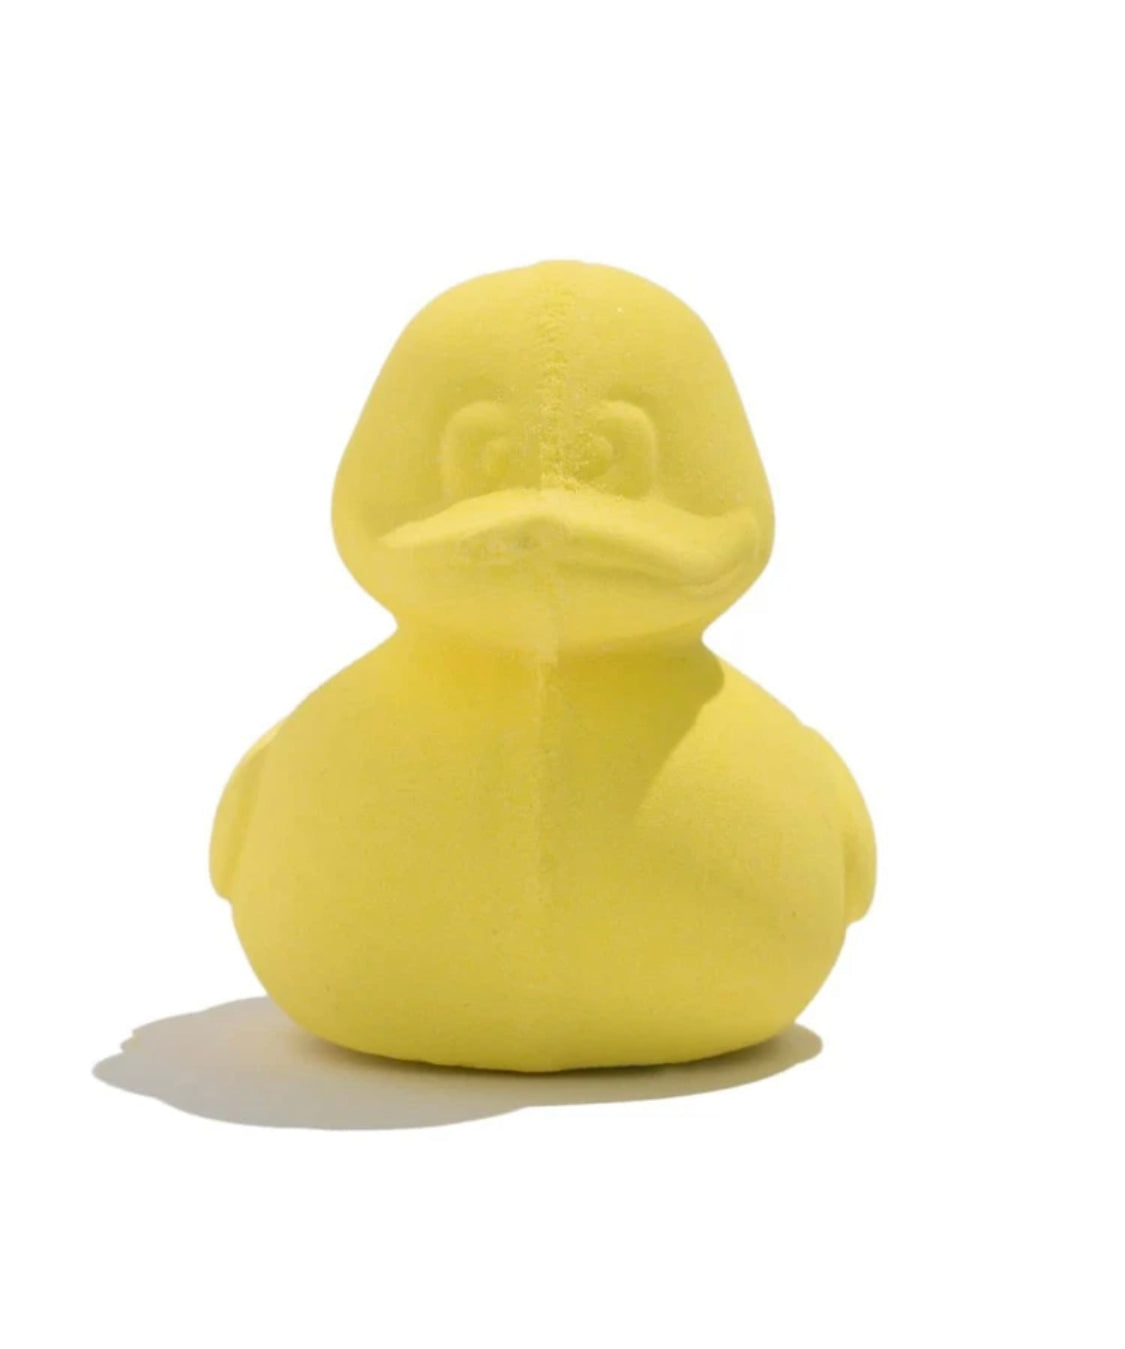 Duck Bath Bomb